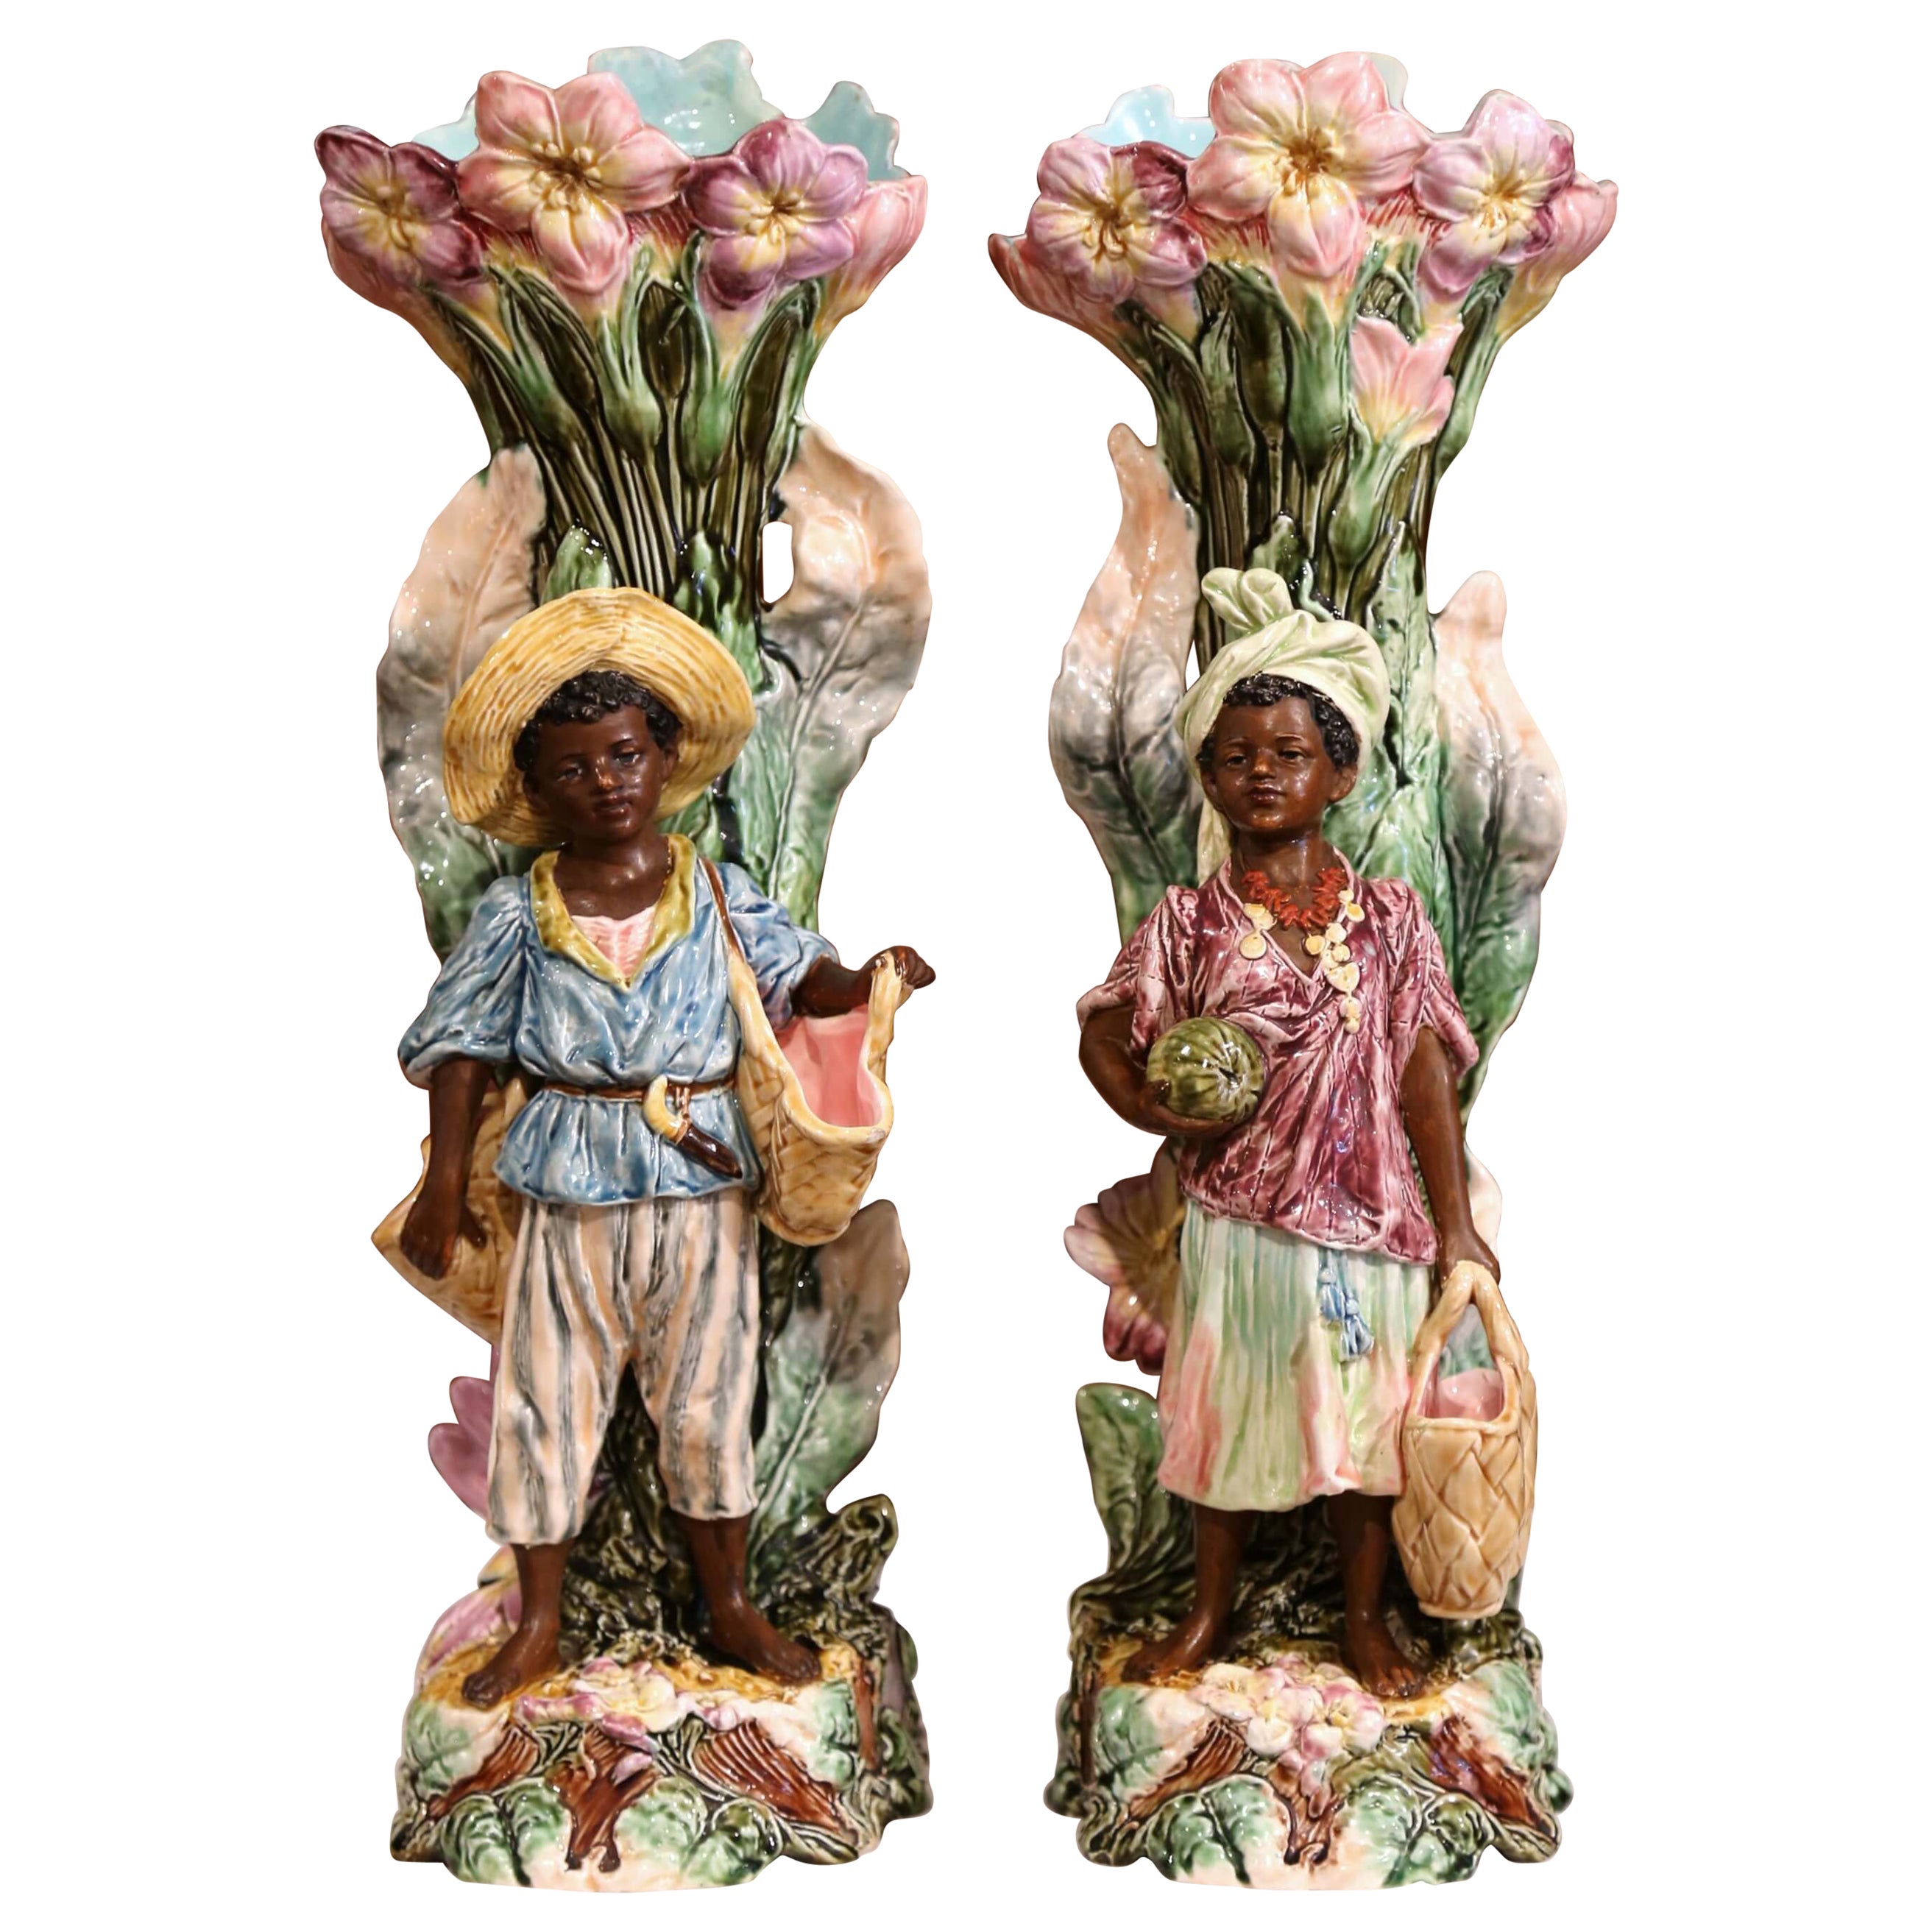 Paire de vases barbotine français en céramique peinte à la main du XIXe siècle